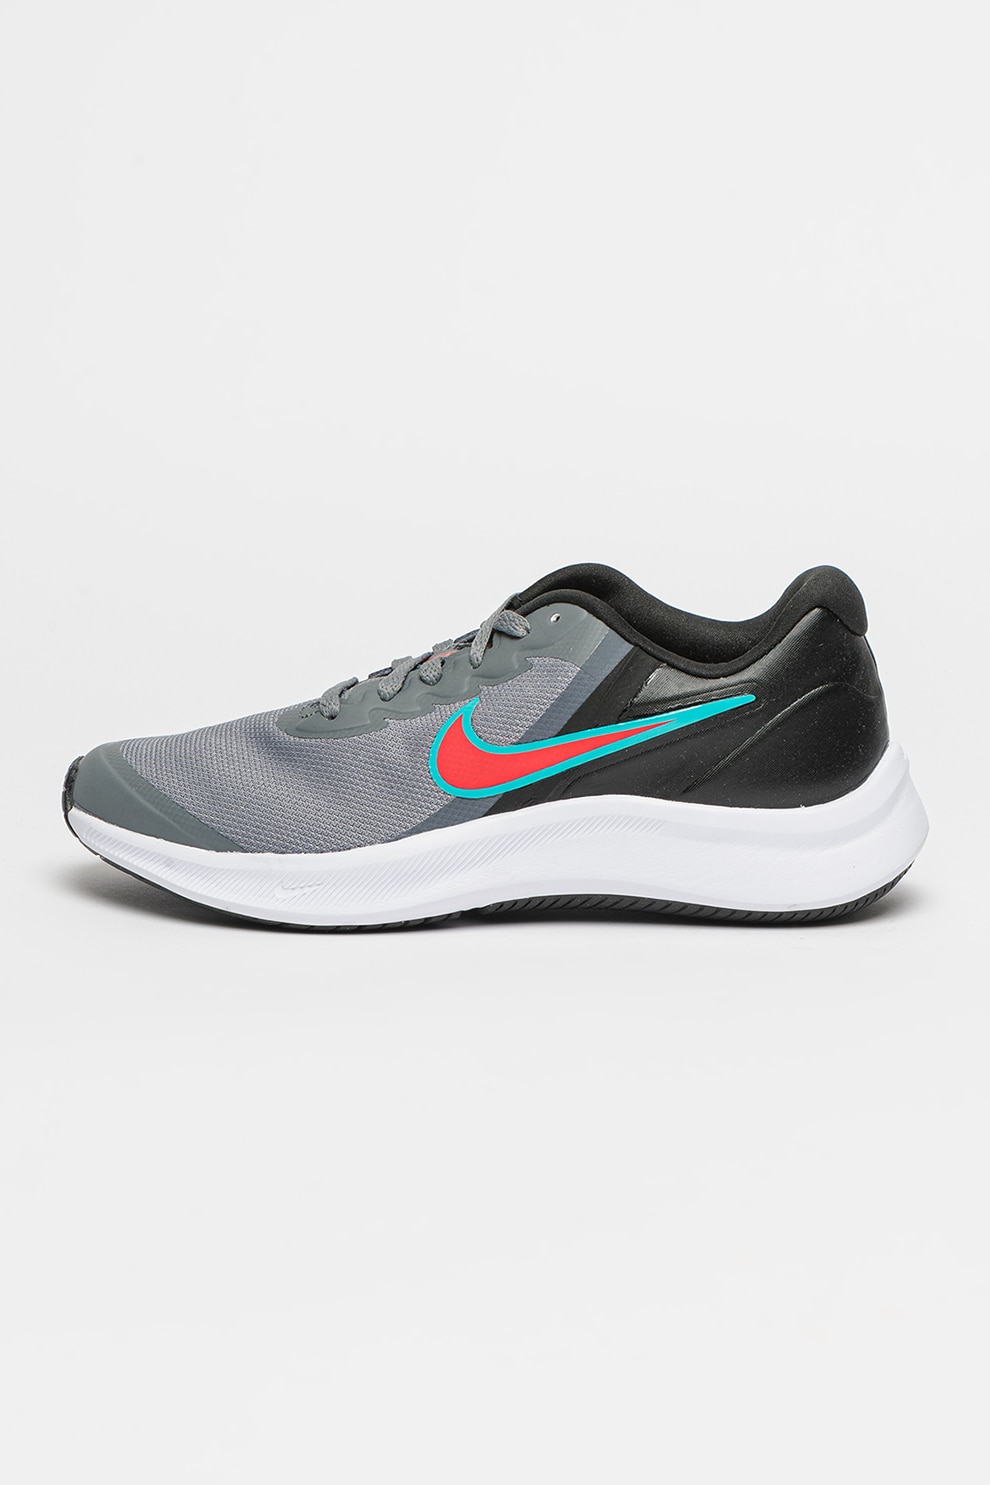 Light Make life Rapid Nike, Pantofi low-top cu logo, pentru alergare Star Runner 3 - eMAG.ro